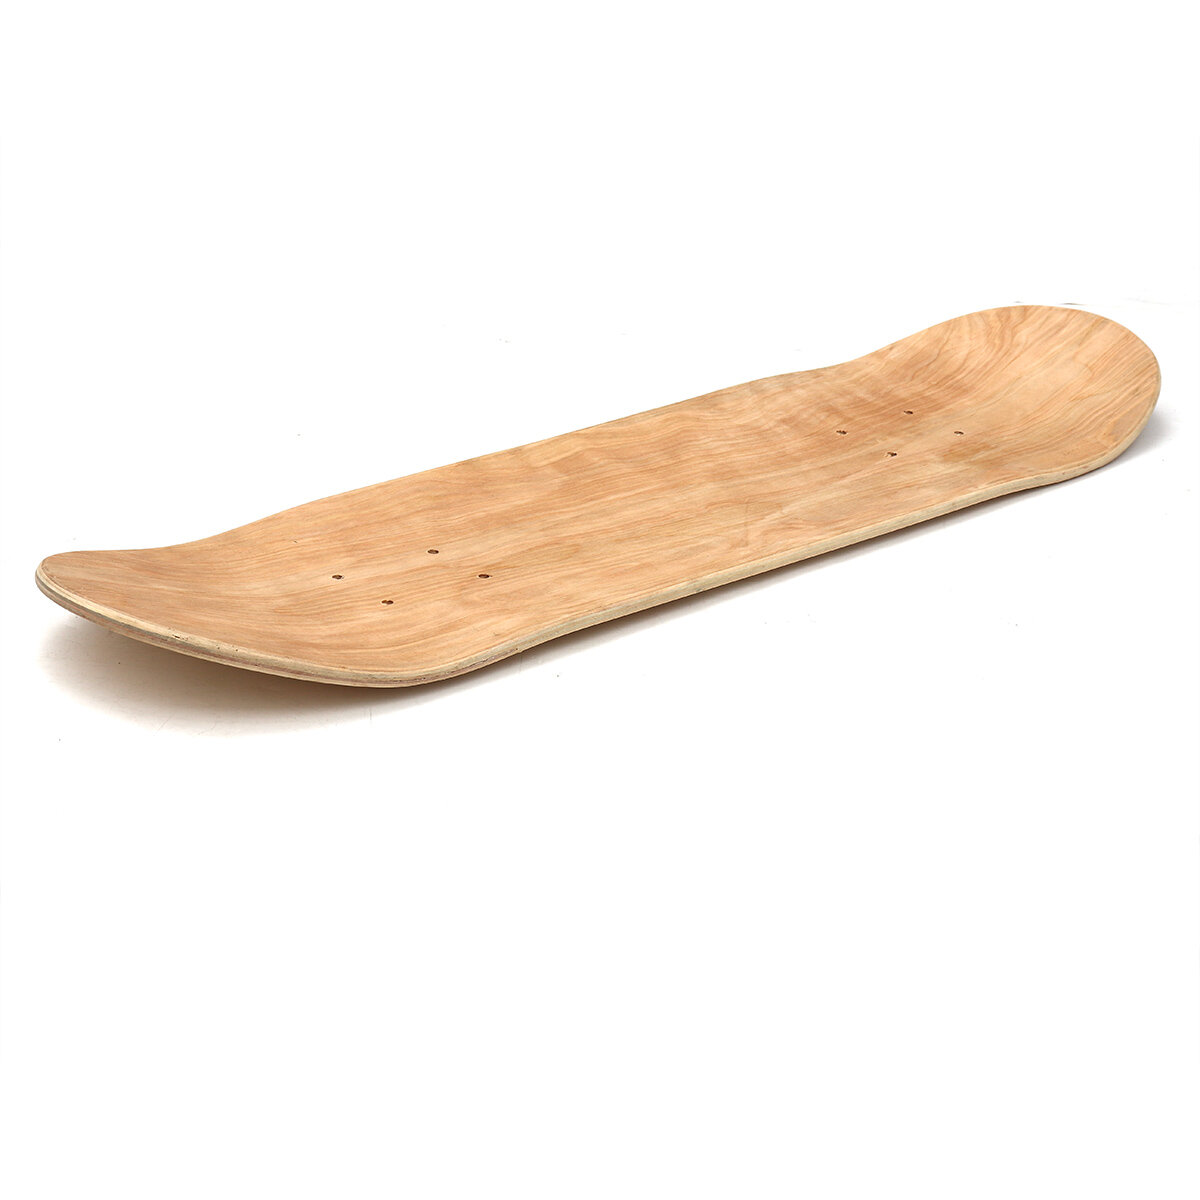 8 بوصة 8-Layer Maple Blank Double Concave Skateboards Natural Skate Deck Board DIY Longboard Deck